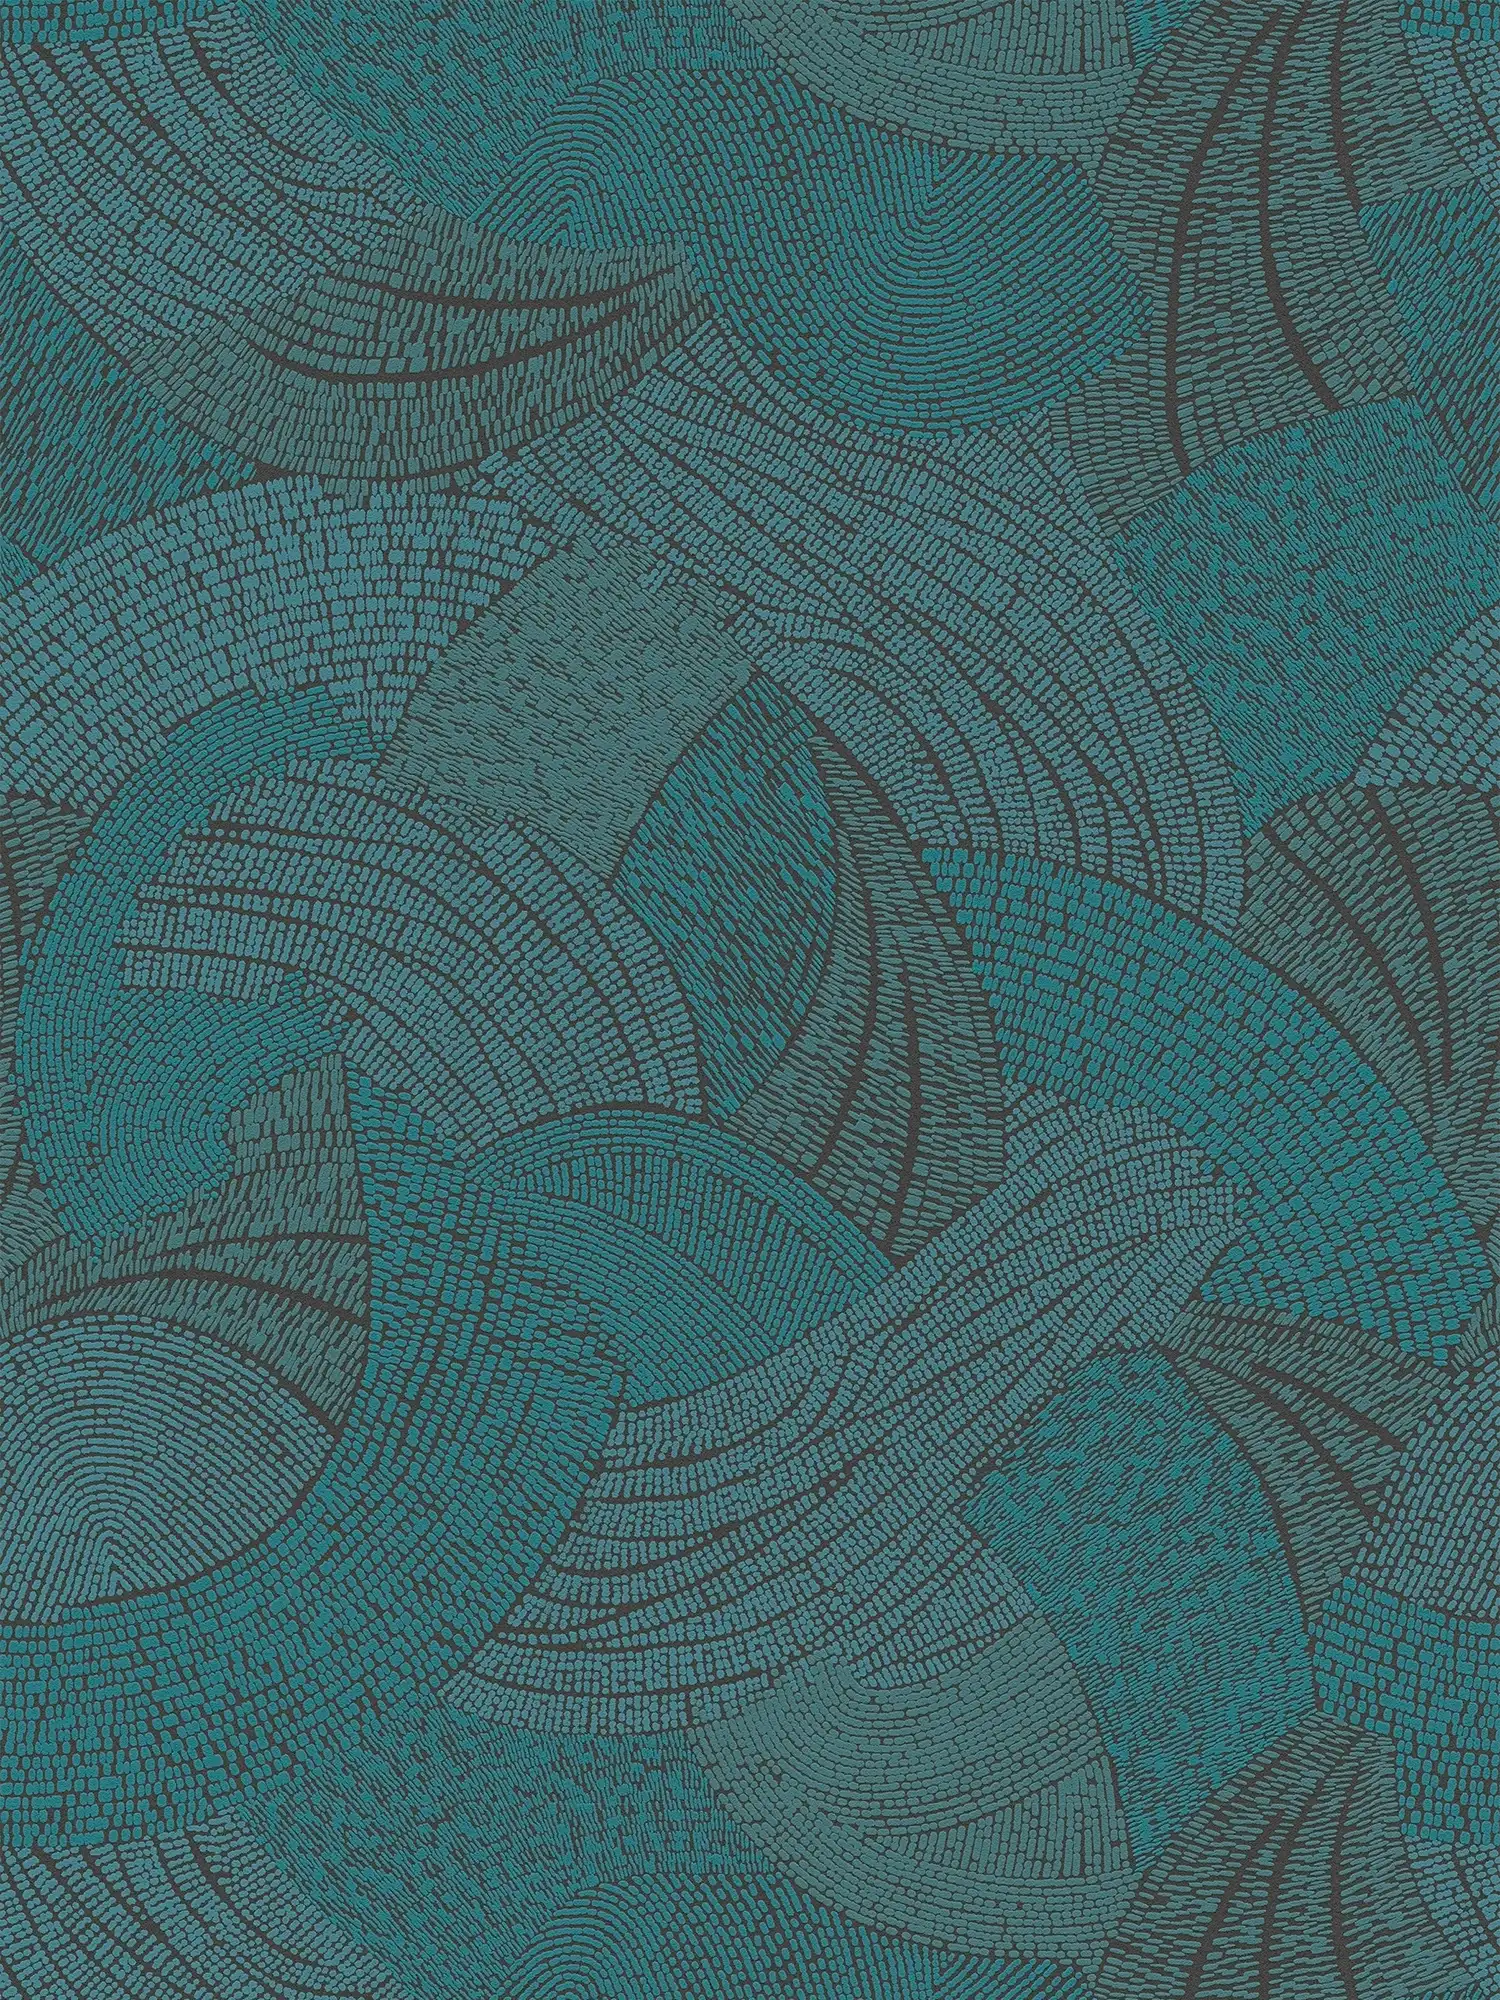 Vliesbehang met abstract golfpatroon - blauw, groen, zwart
